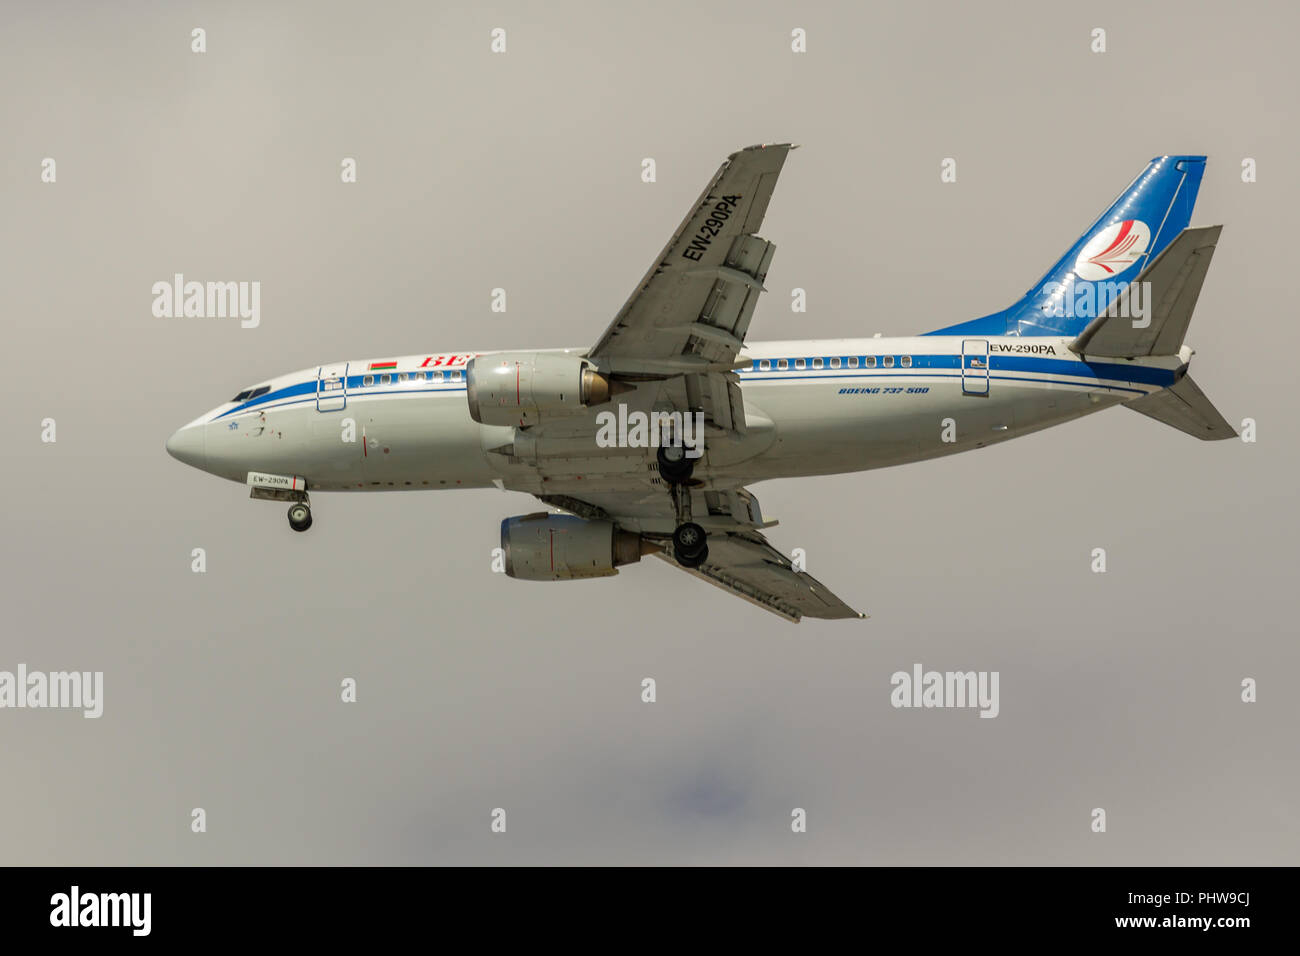 Sankt Petersburg, Russland - 19 April, 2017: Fliegen die Boeing 737-5 Q8 (EW-290PA) Fluggesellschaft "Belavia". Das Flugzeug geht bei der Landung am Flughafen Pulkowo. Stockfoto